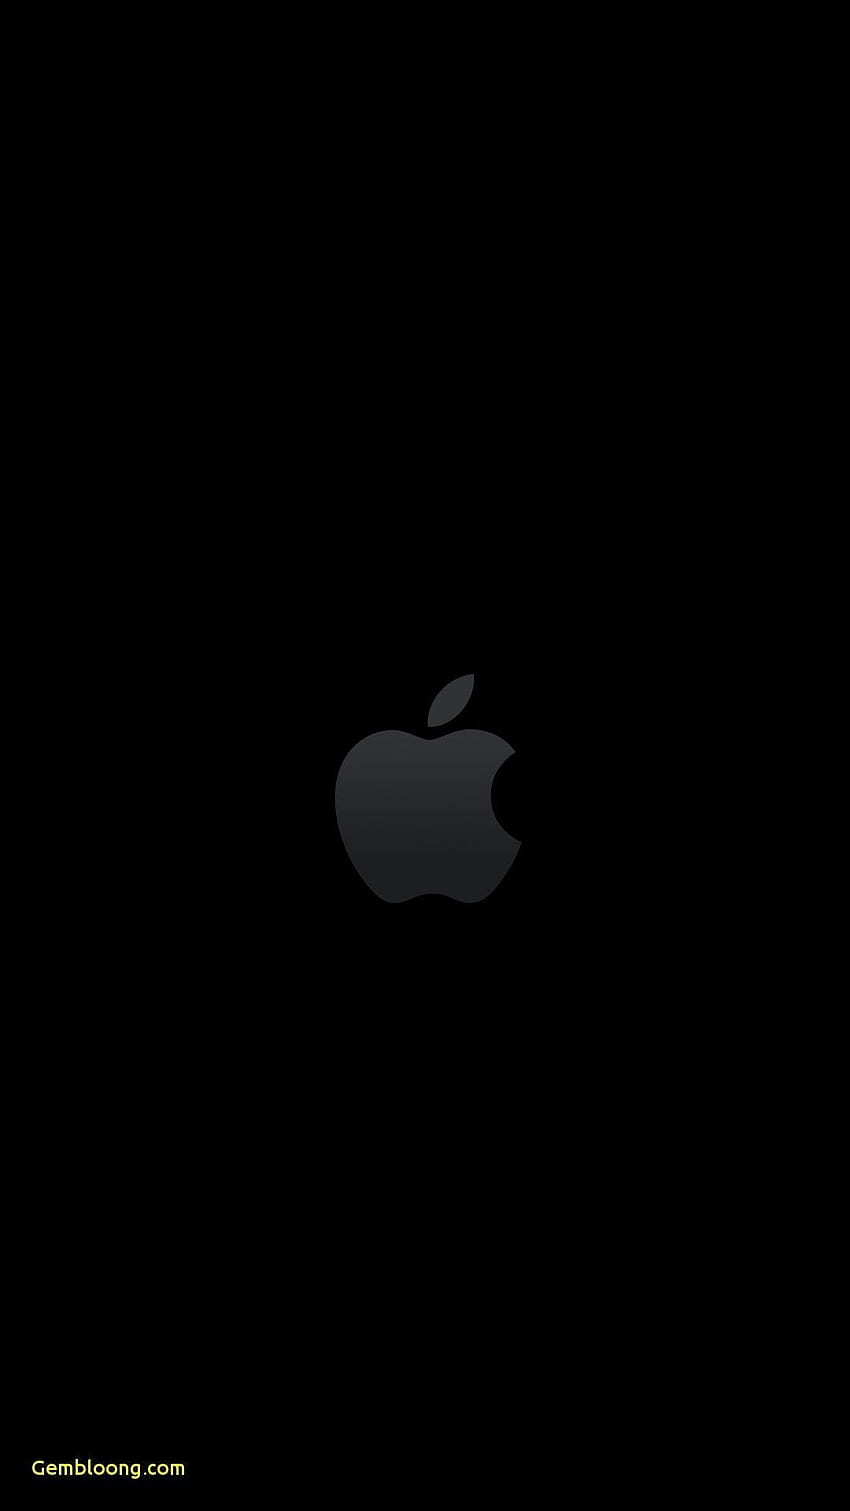 Pin de zeekoo Muhammed en Black apple. Fondos de pantalla para iphone, Fondos de pantalla de iphone, Fondo de pantalla de manzana, Black Apple 7 HD phone wallpaper